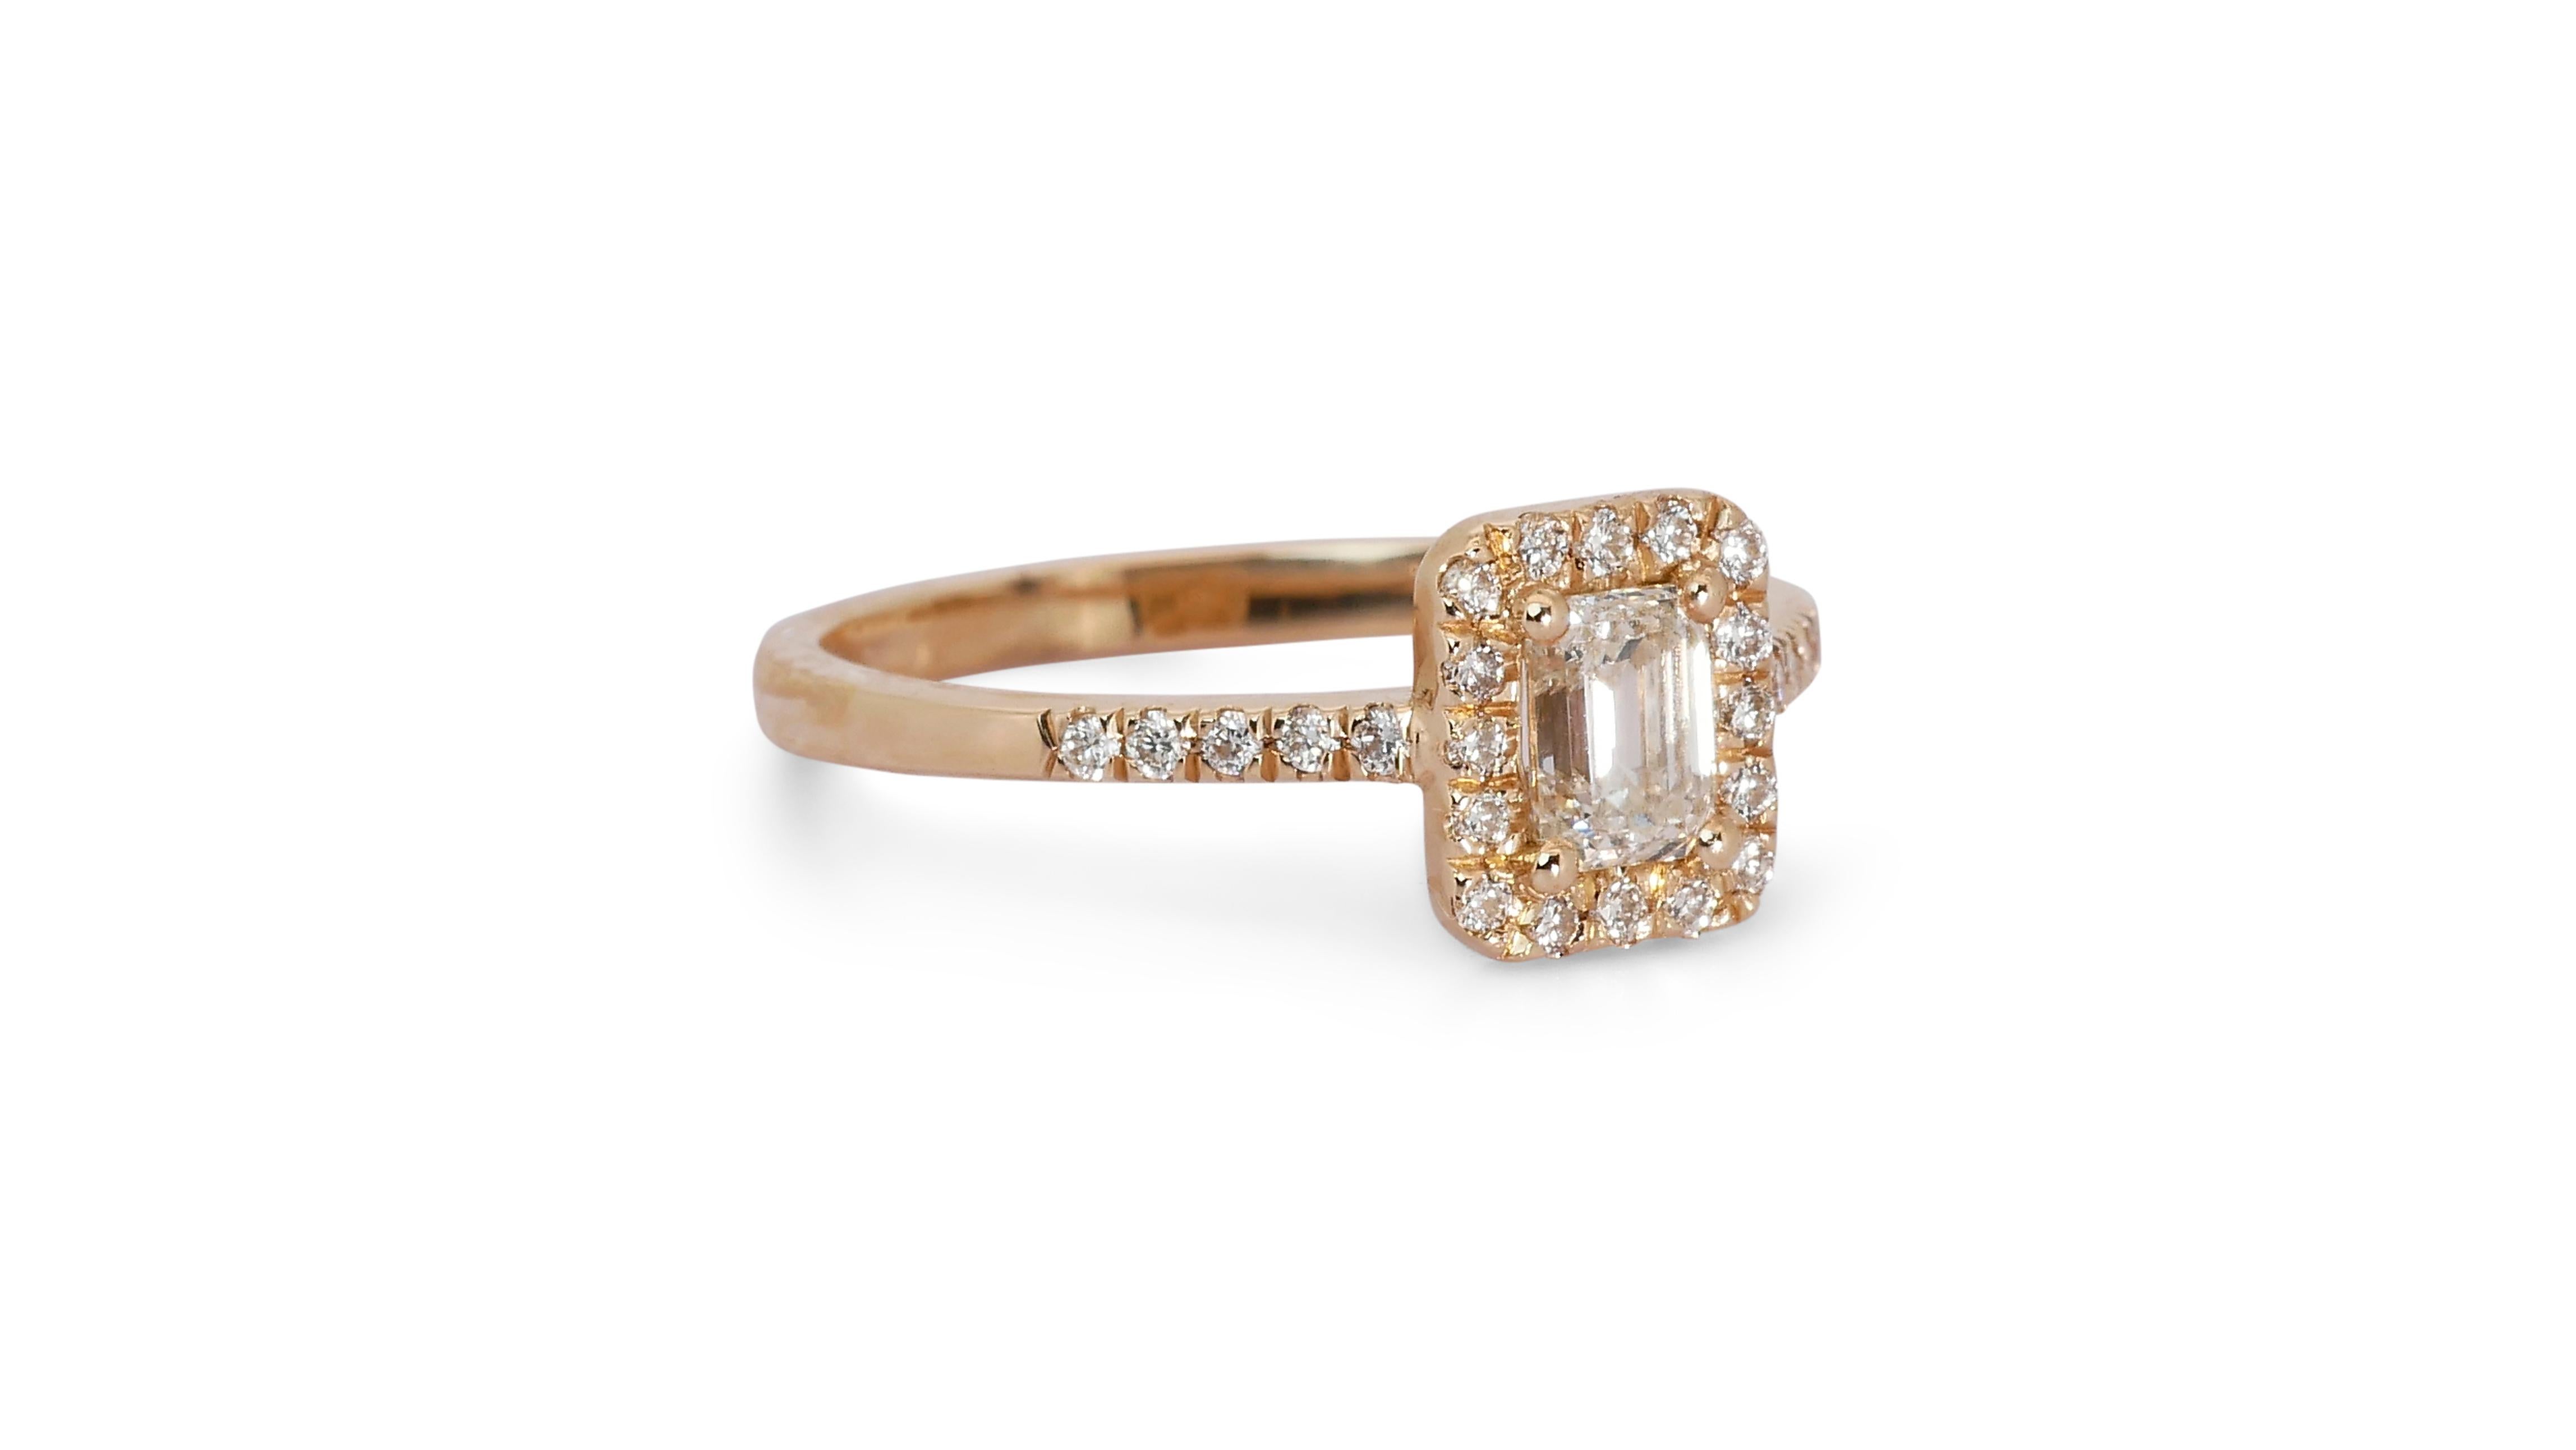 Ravishing 18k Rose Gold Halo Ring w/ 0.84 Carat Natural Diamonds IGI Cert For Sale 1